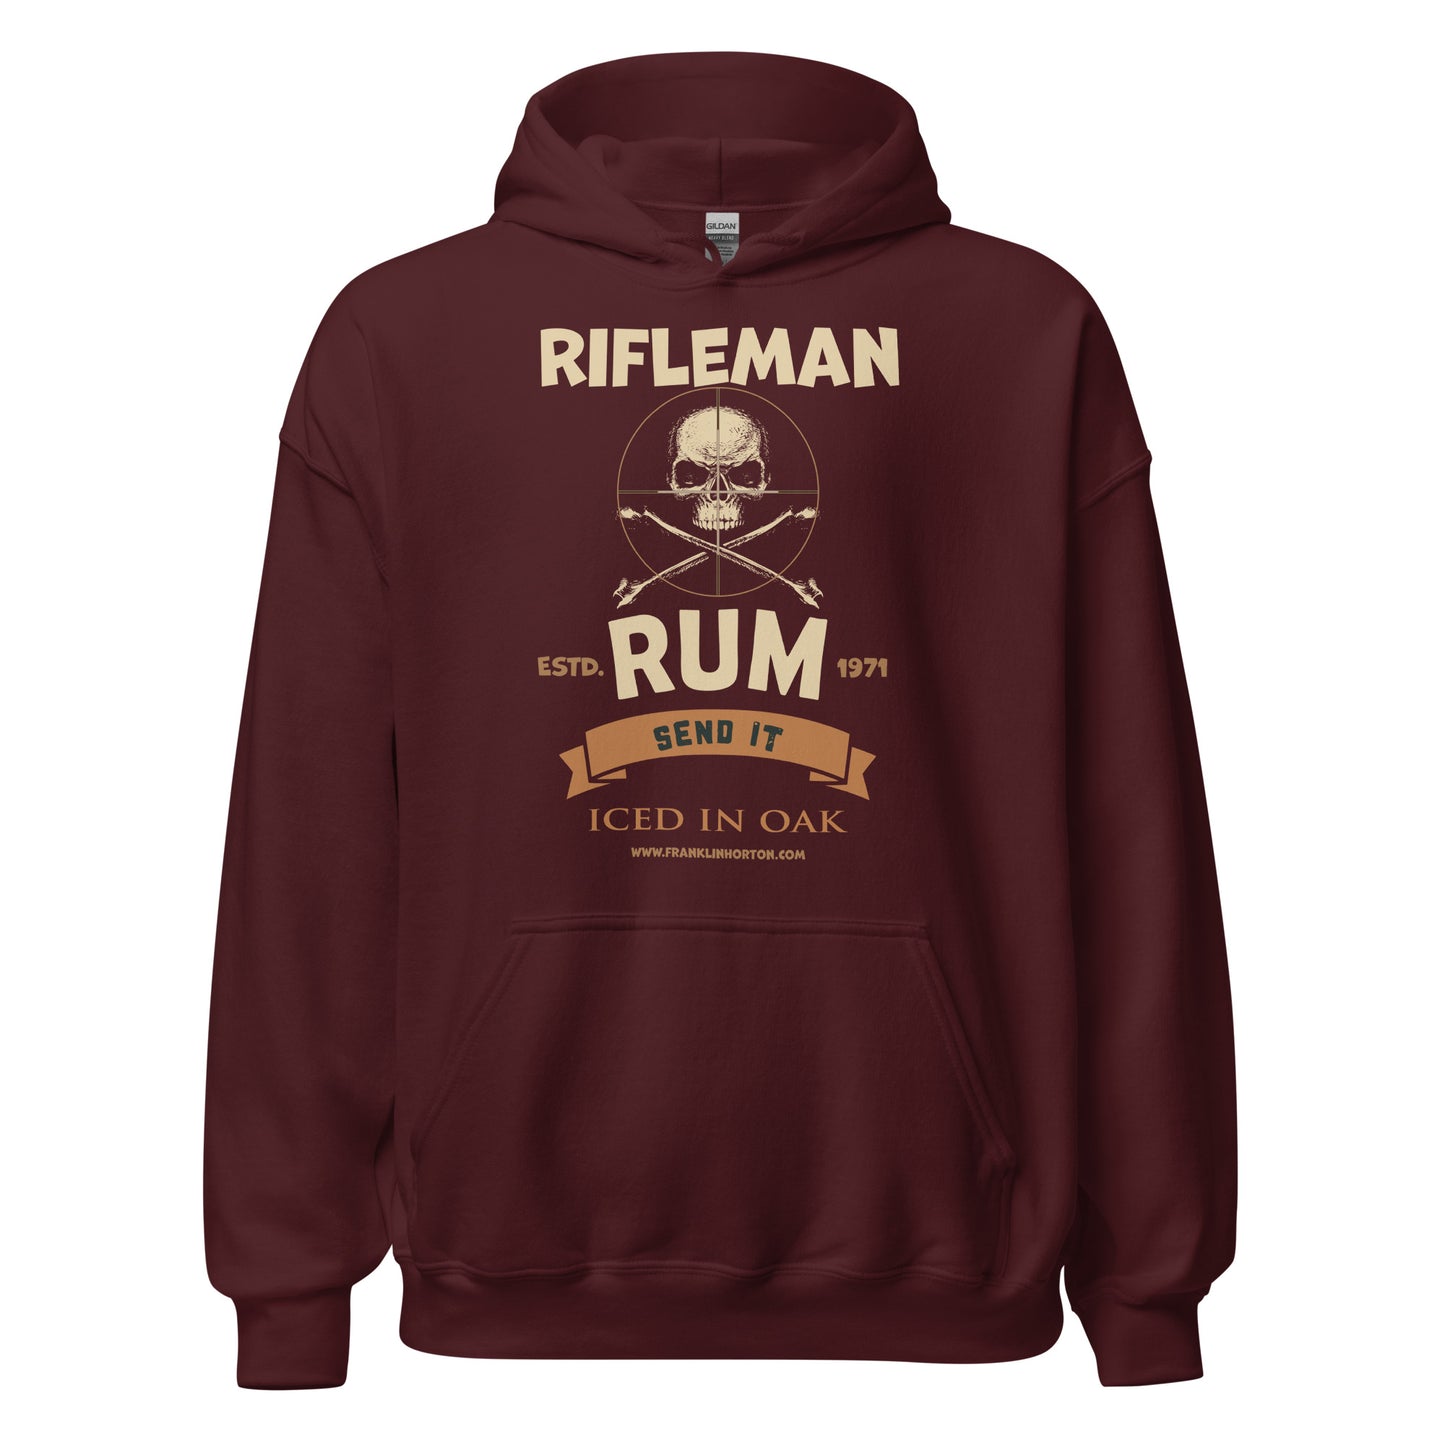 Rifleman Rum Unisex Hoodie